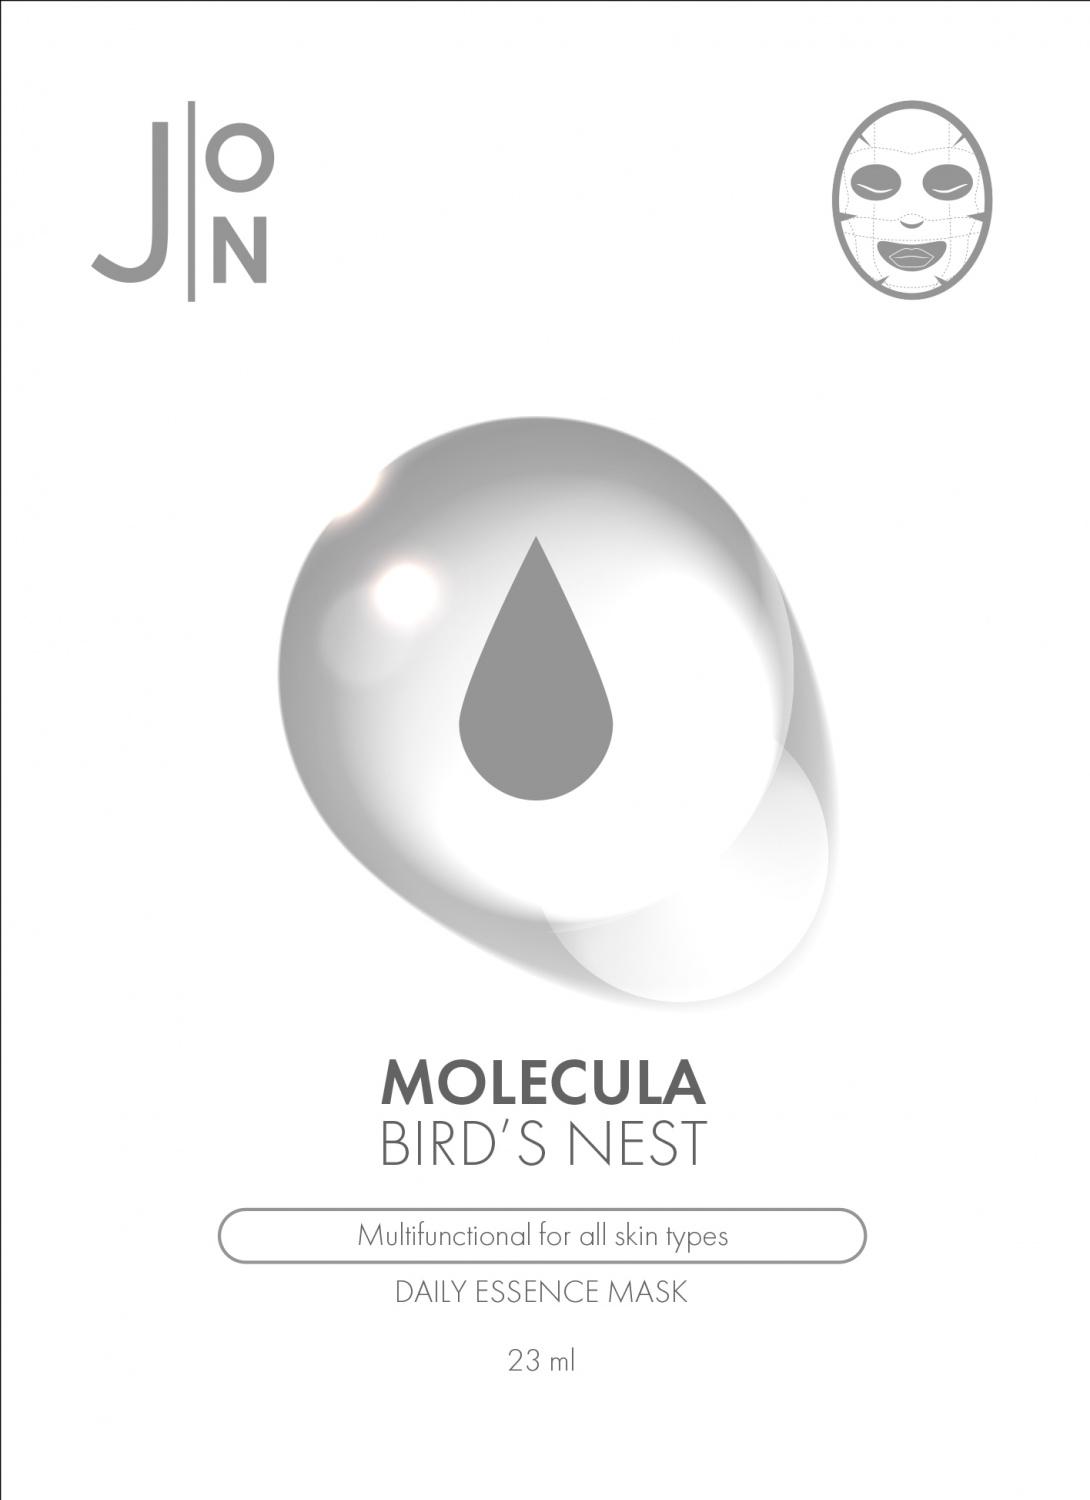 J:ON Molecula Bird's Nest Daily Essence Mask 1p - интернет-магазин профессиональной косметики Spadream, изображение 31697